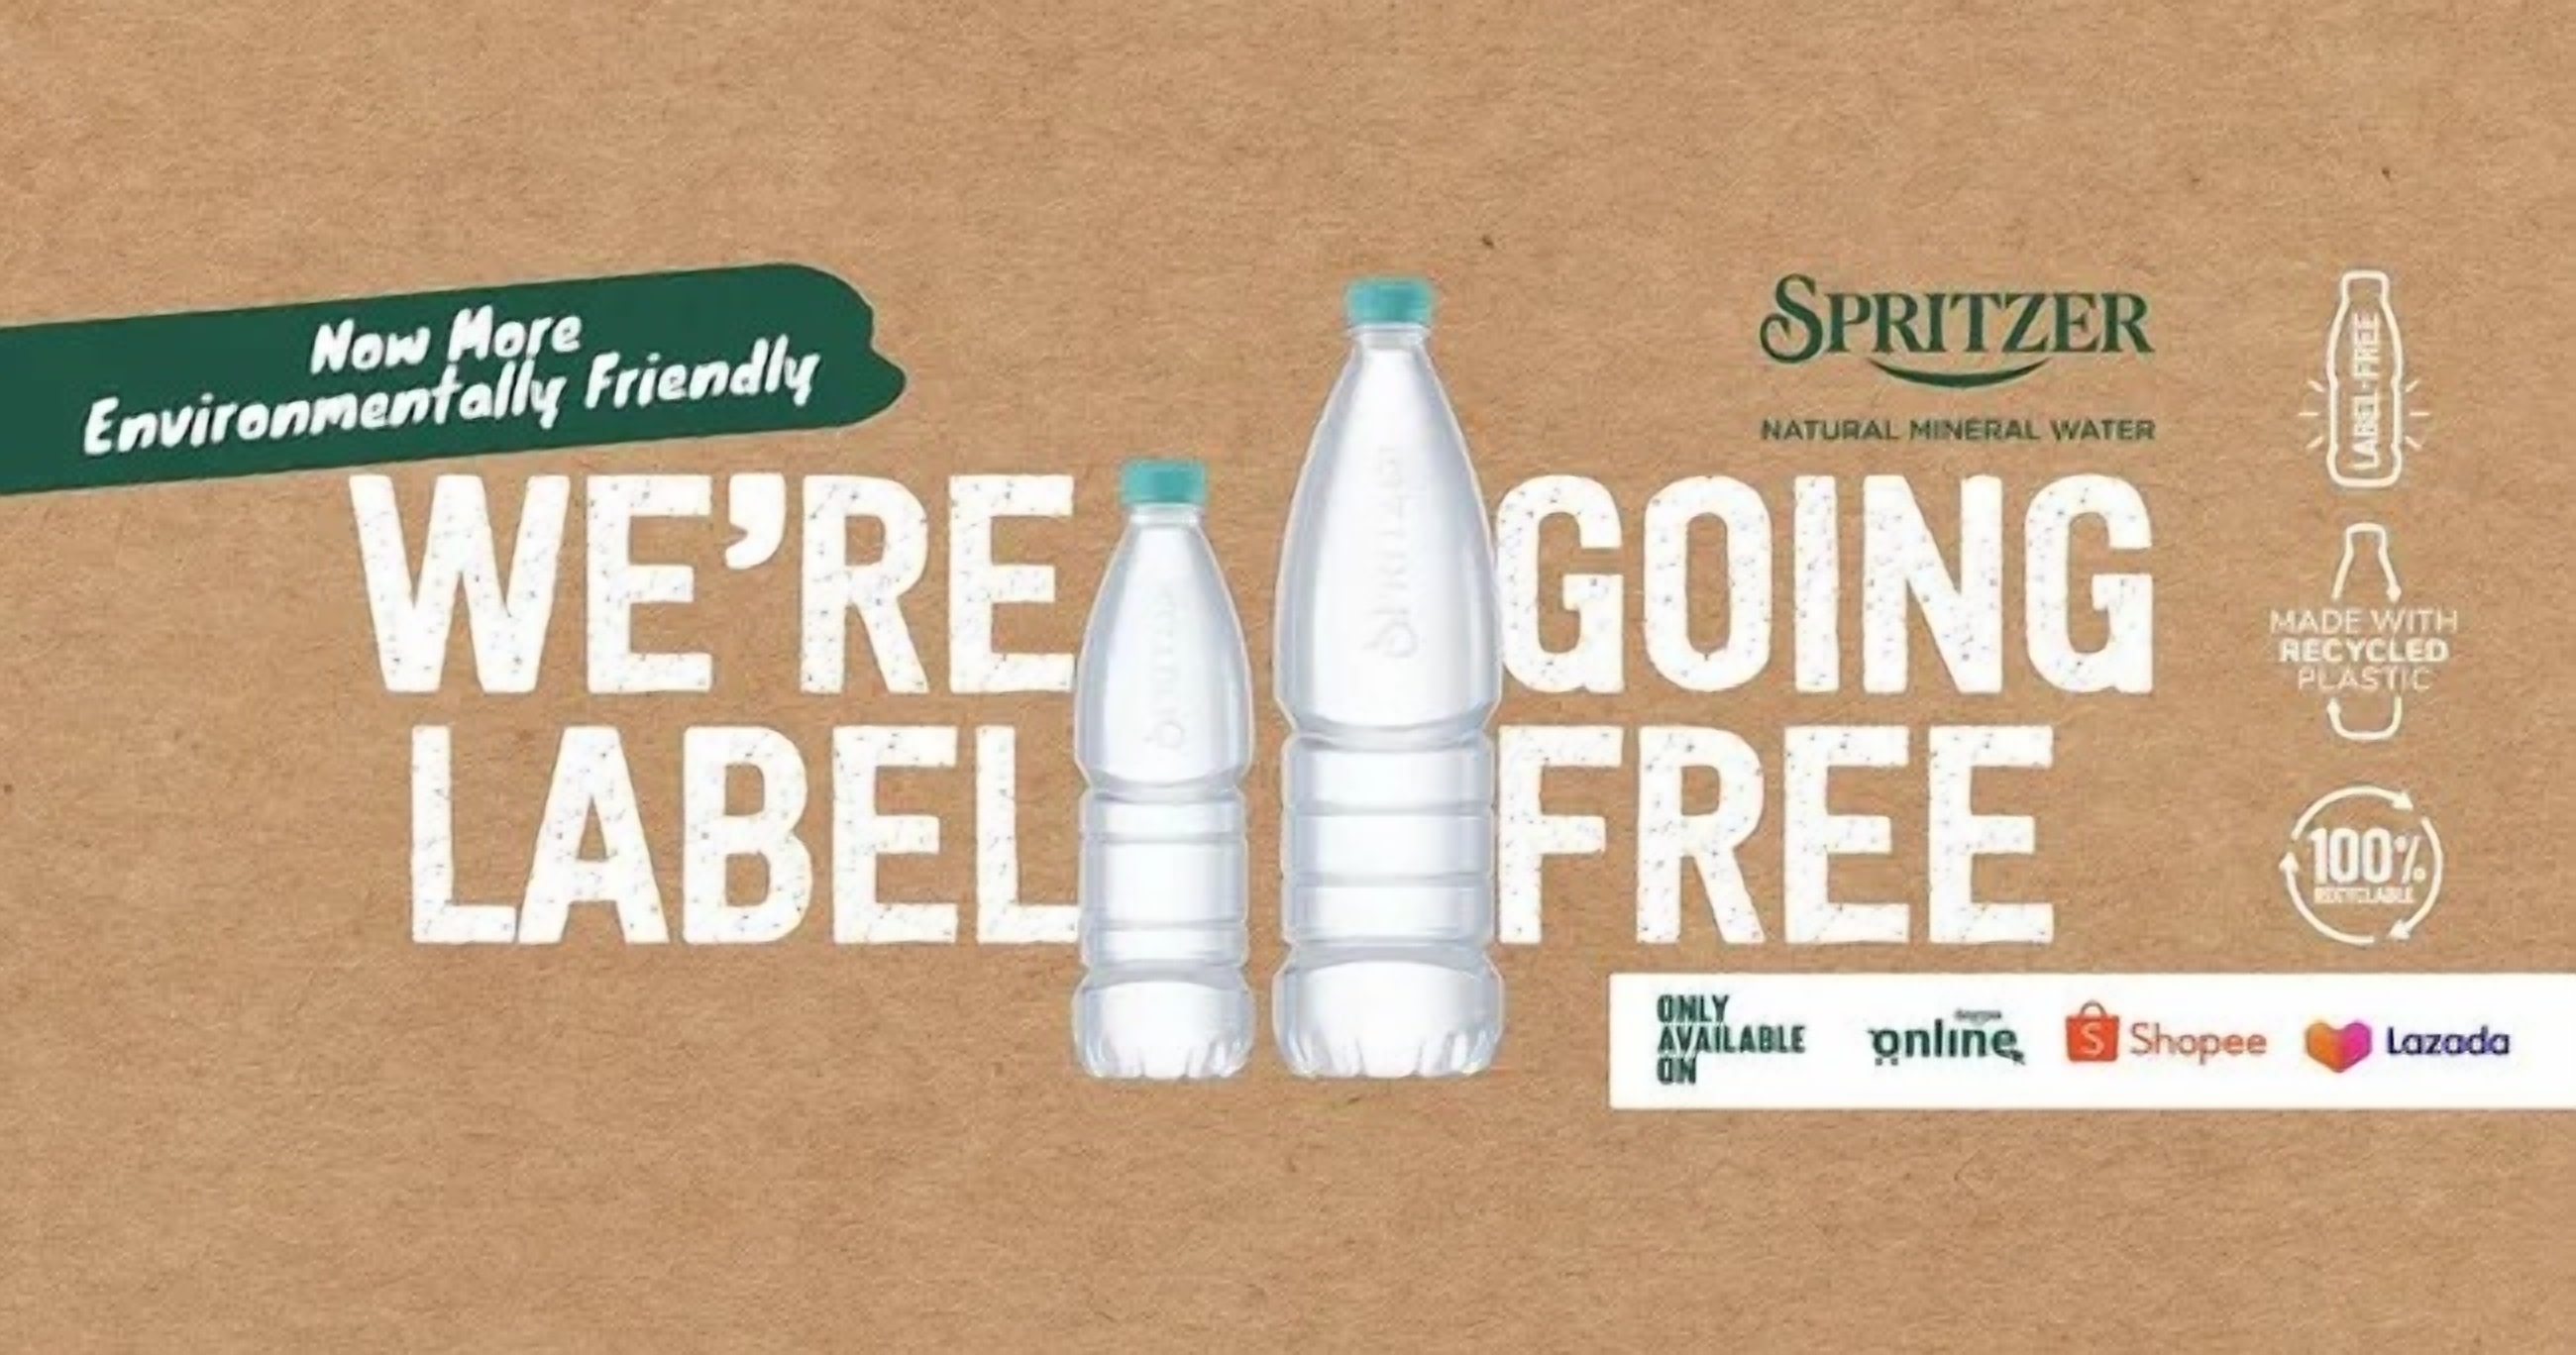 KnowESG_SPRITZER label-free bottles